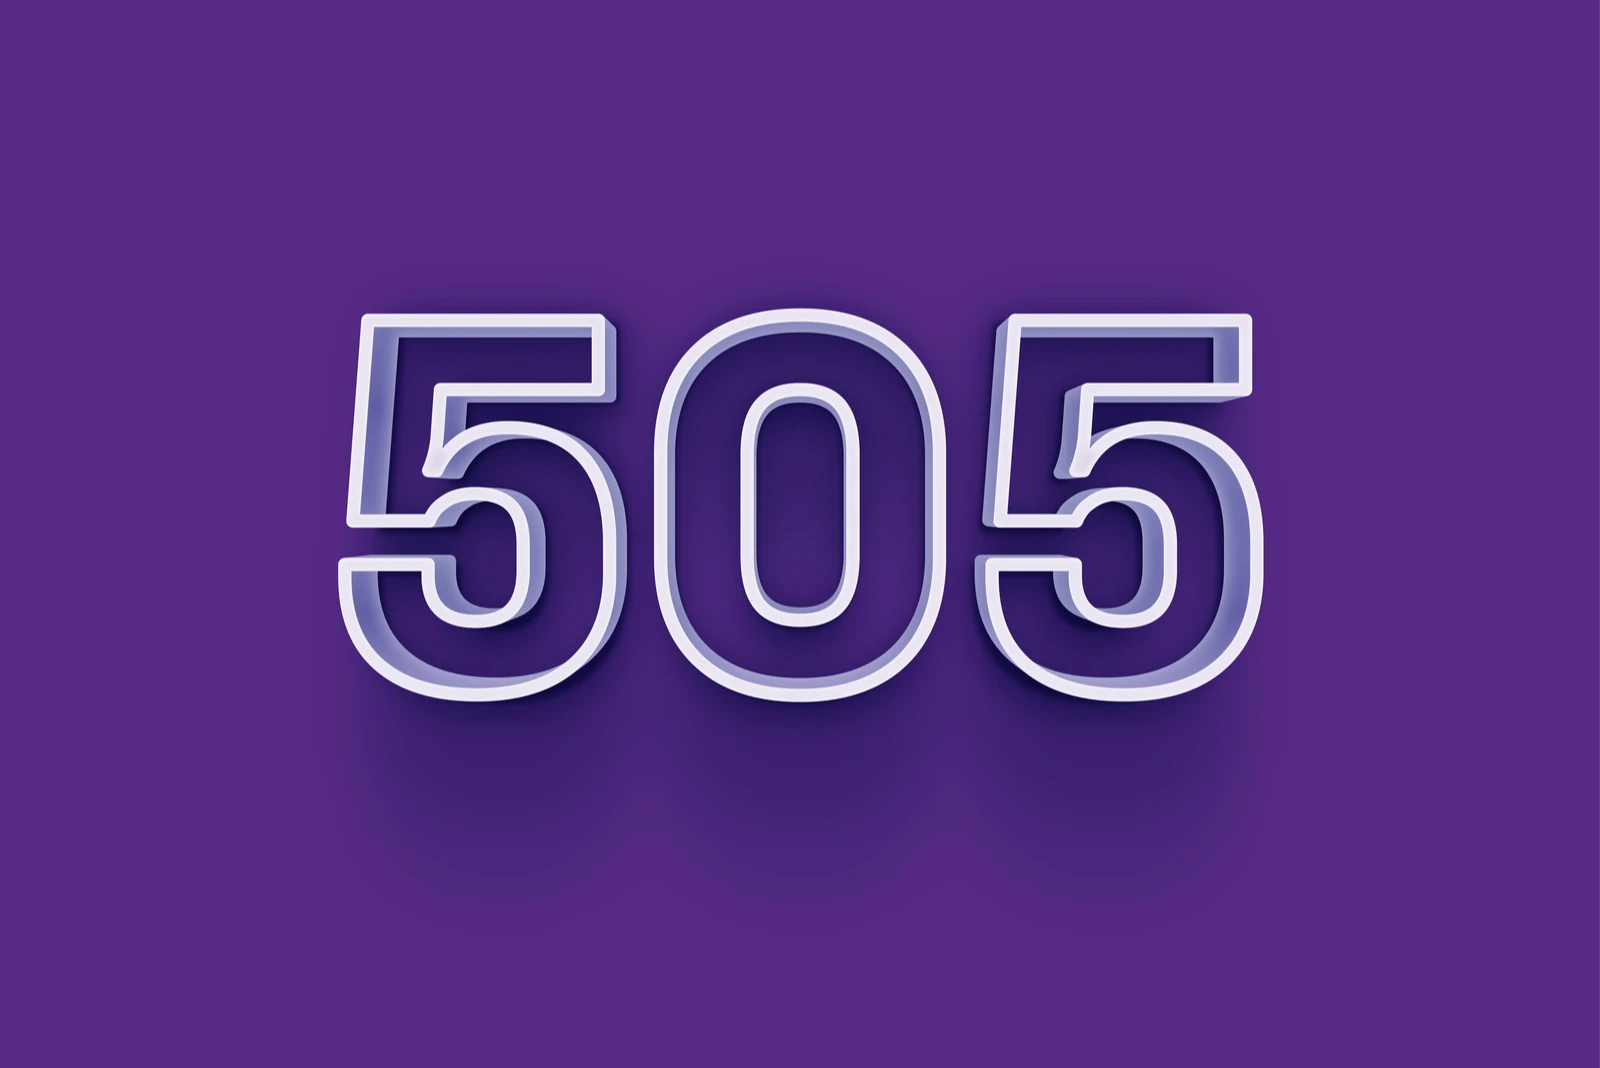 Die 3D-Nummer 505 ist auf einem violetten Hintergrund isoliert